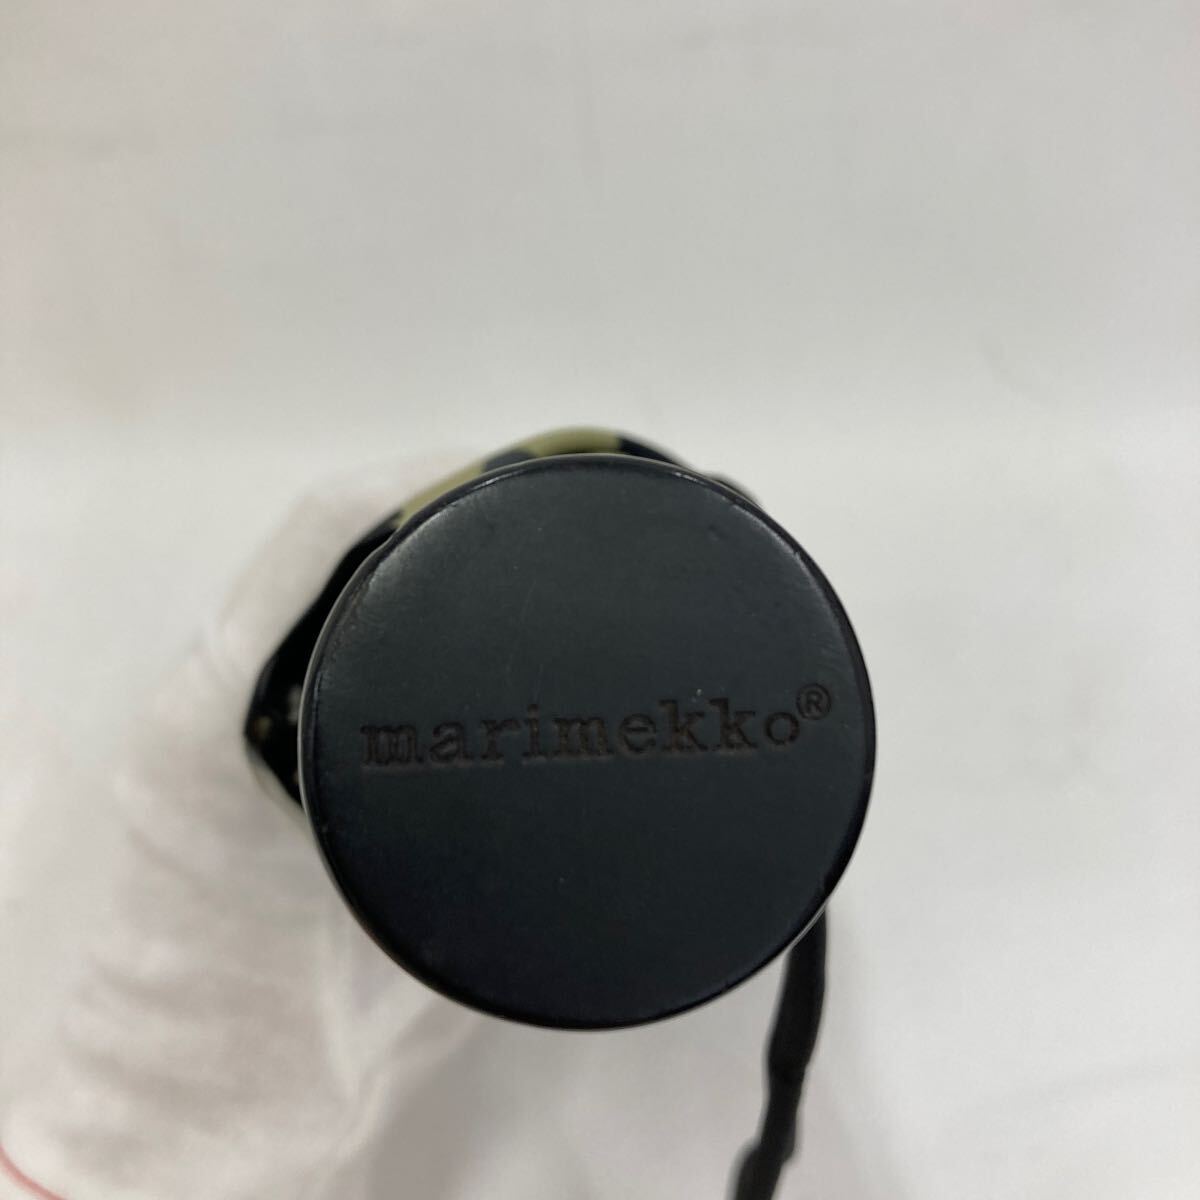 *9115 marimekko Marimekko цветочный принт черный монохромный белый чёрный складной зонт compact umbrella зонт от дождя 